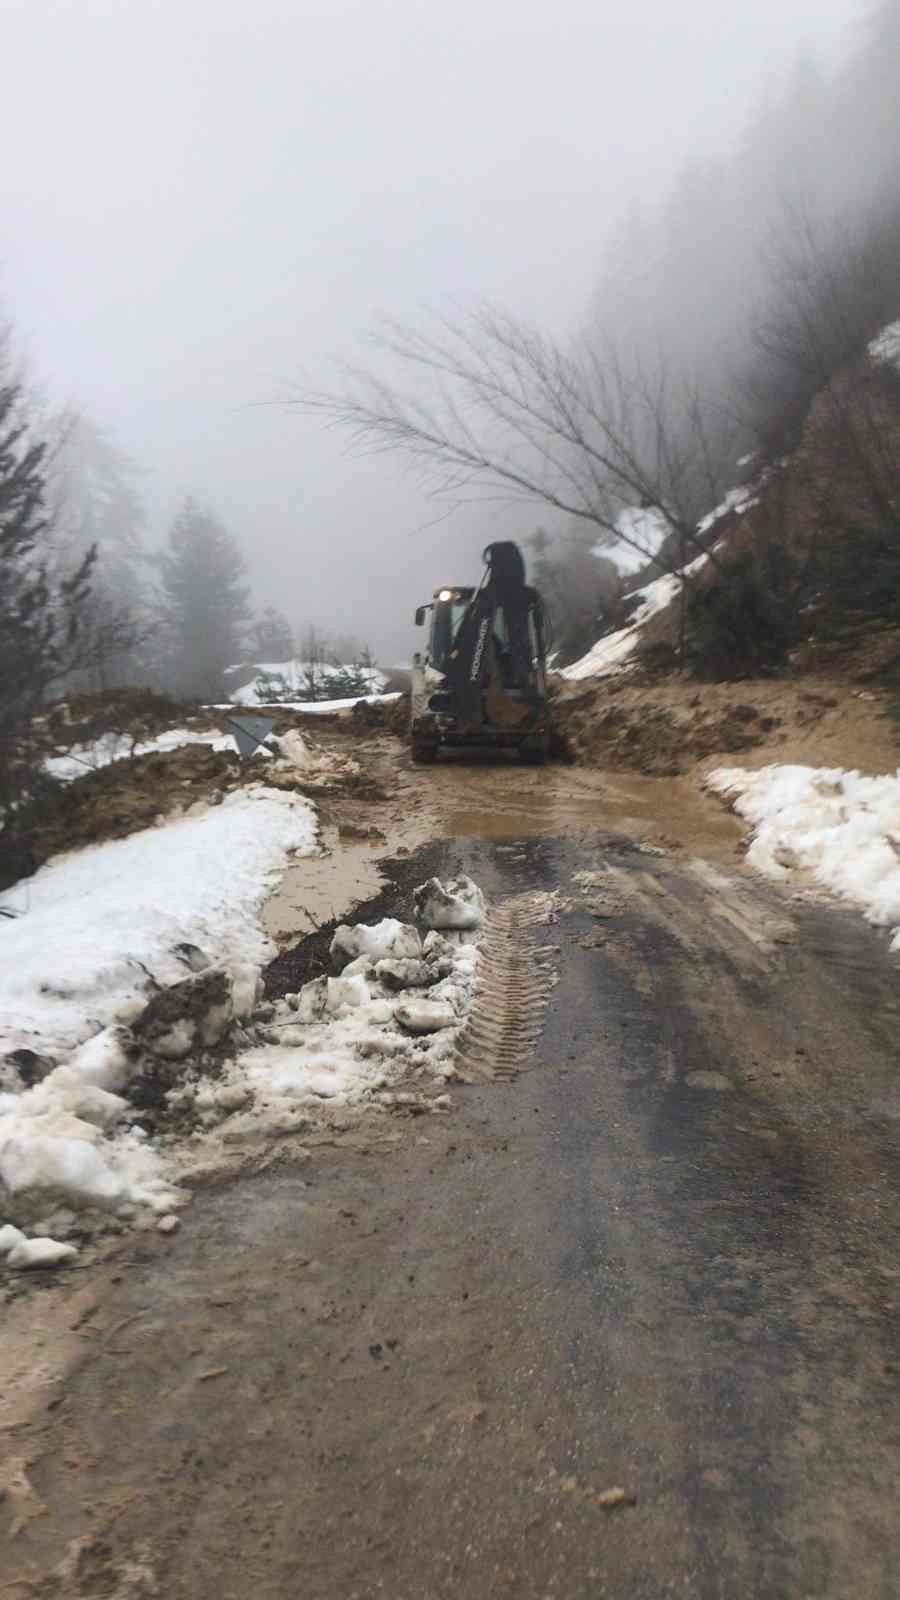 Sinop’ta meydana gelen heyelan 2 köy yolunu kapattı #sinop